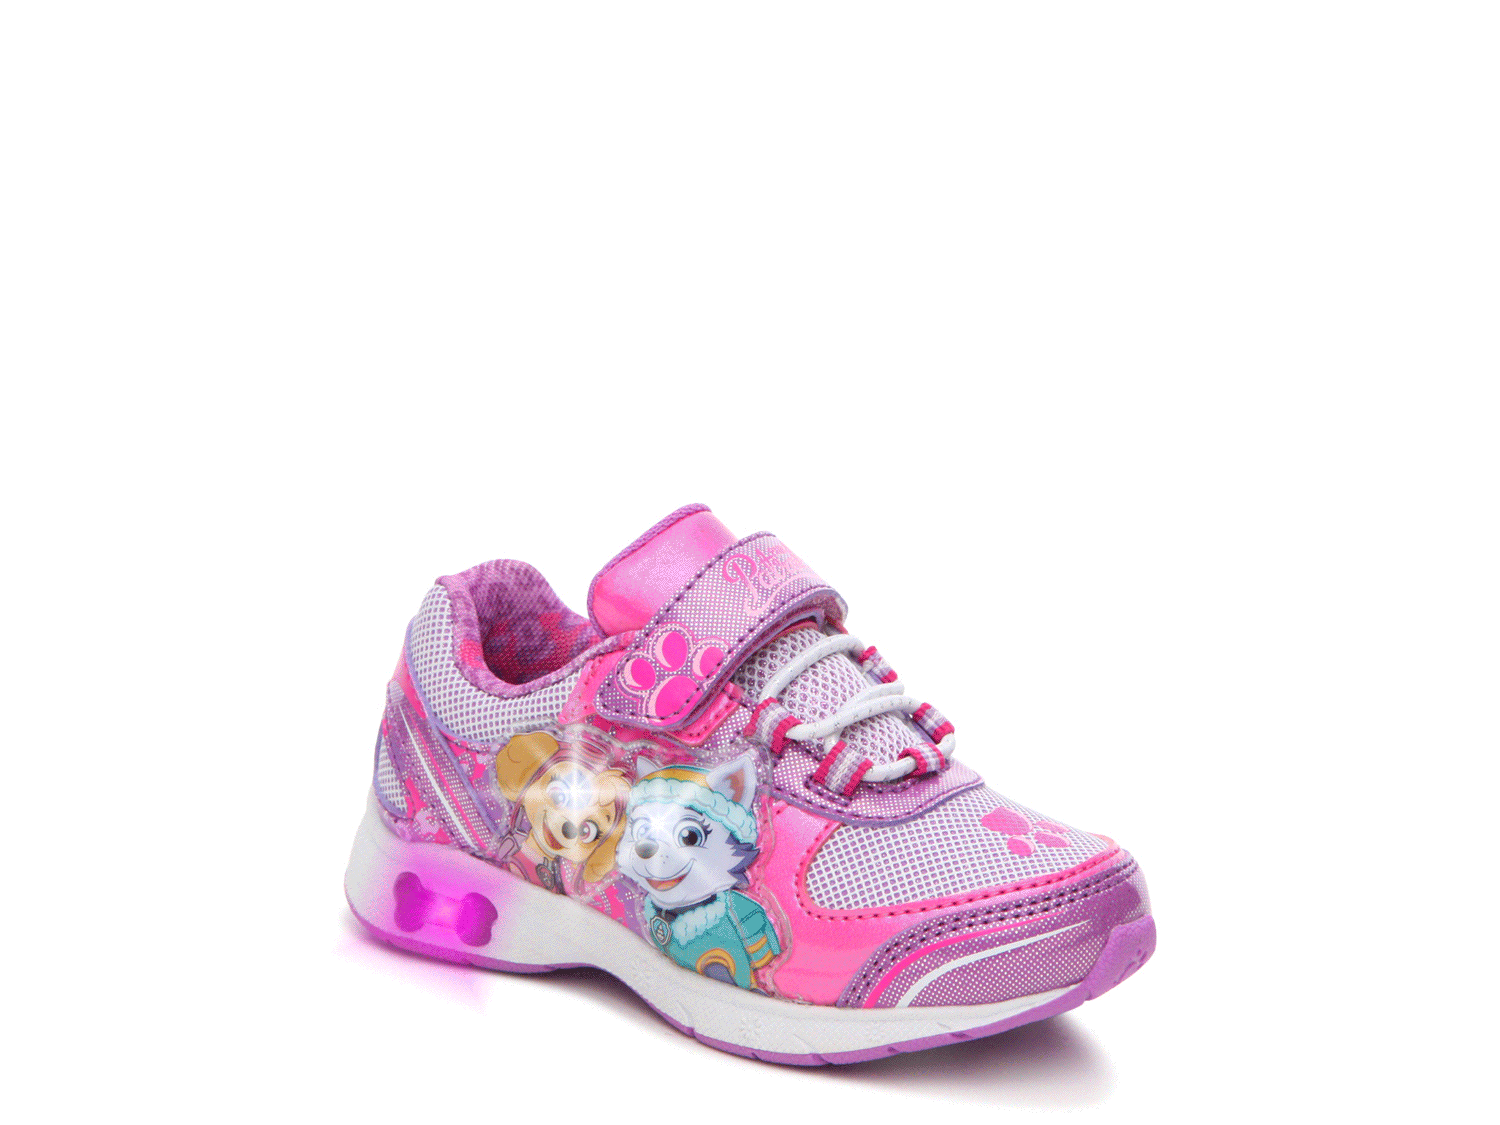 Nickelodeon Paw Patrol LightUp Sneaker Kids' Kids Shoes